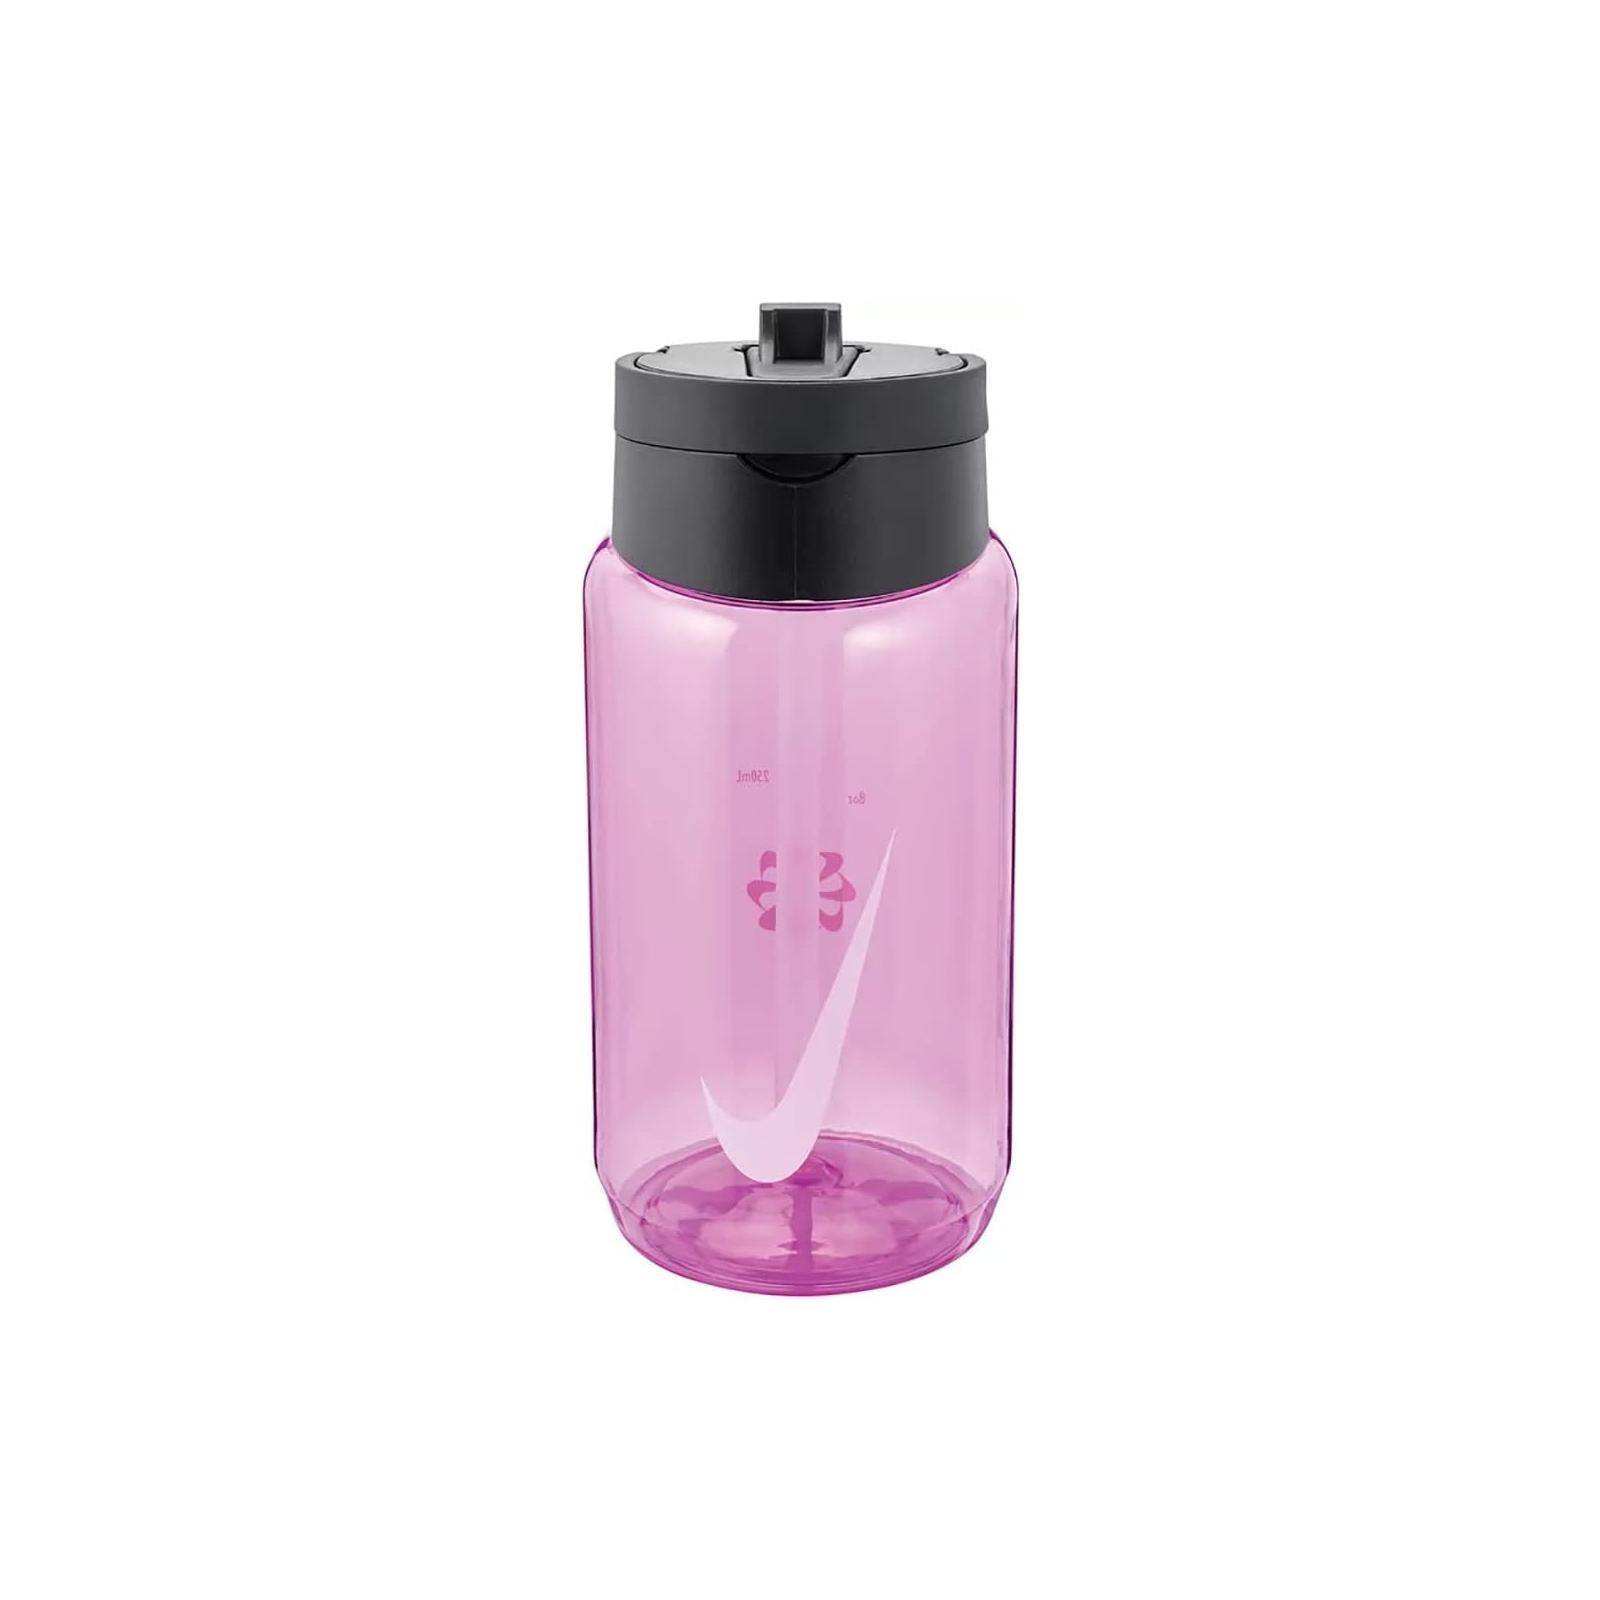 Пляшка для води Nike TR Renew Recharge Straw Bottle 16 OZ рожевий, чорний 473 мл N.100.7640.644.16 (887791733467)